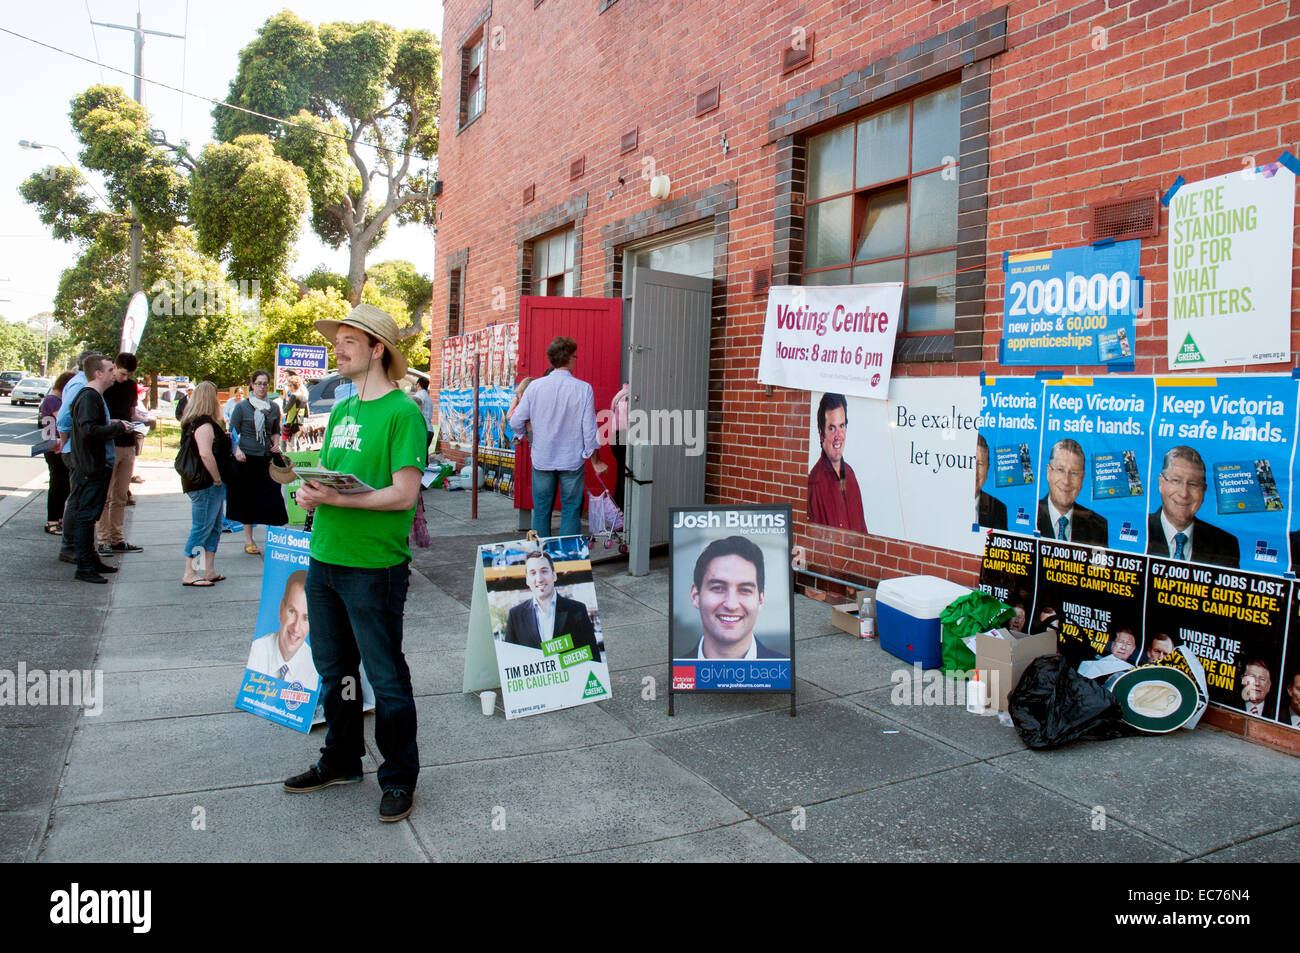 Scena al di fuori di una chiesa hall stand per sondaggi durante il 2014 stato vittoriano elezioni, Australia Foto Stock